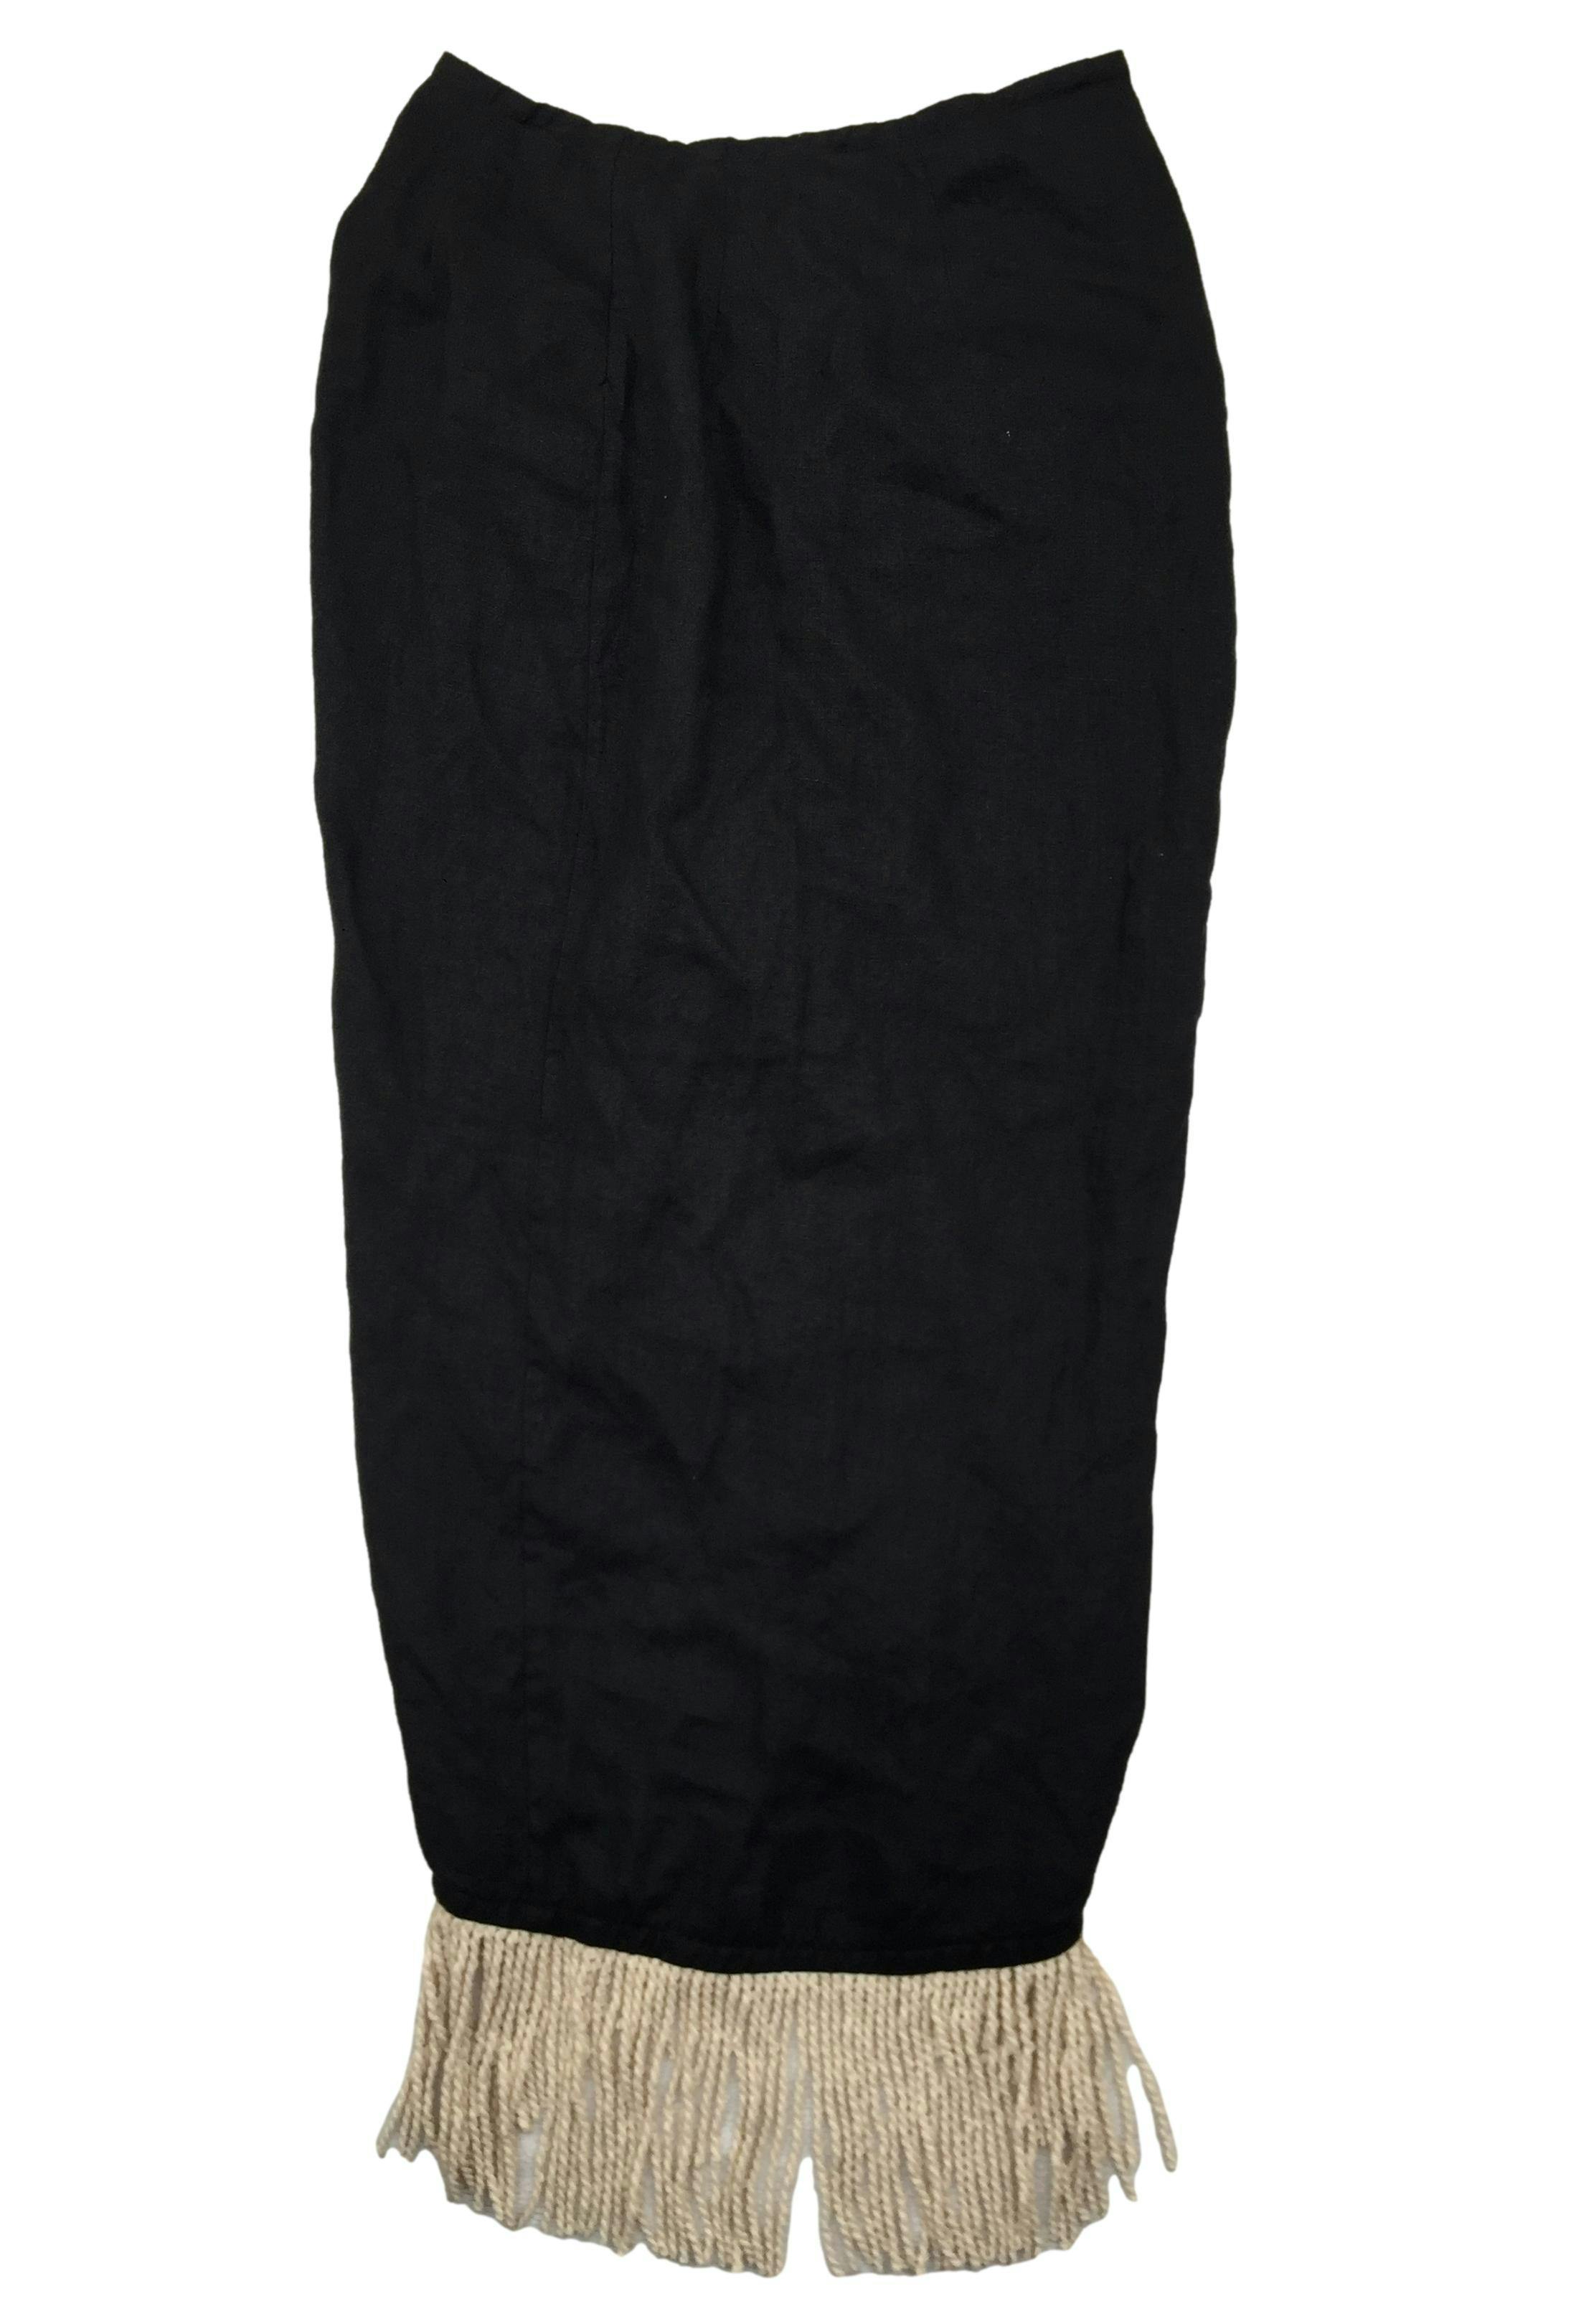 Falda negra de lino, fruncido posterior con flecos trenzados en basta asimétrica. Cintura 68 cm, Largo 85 cm.